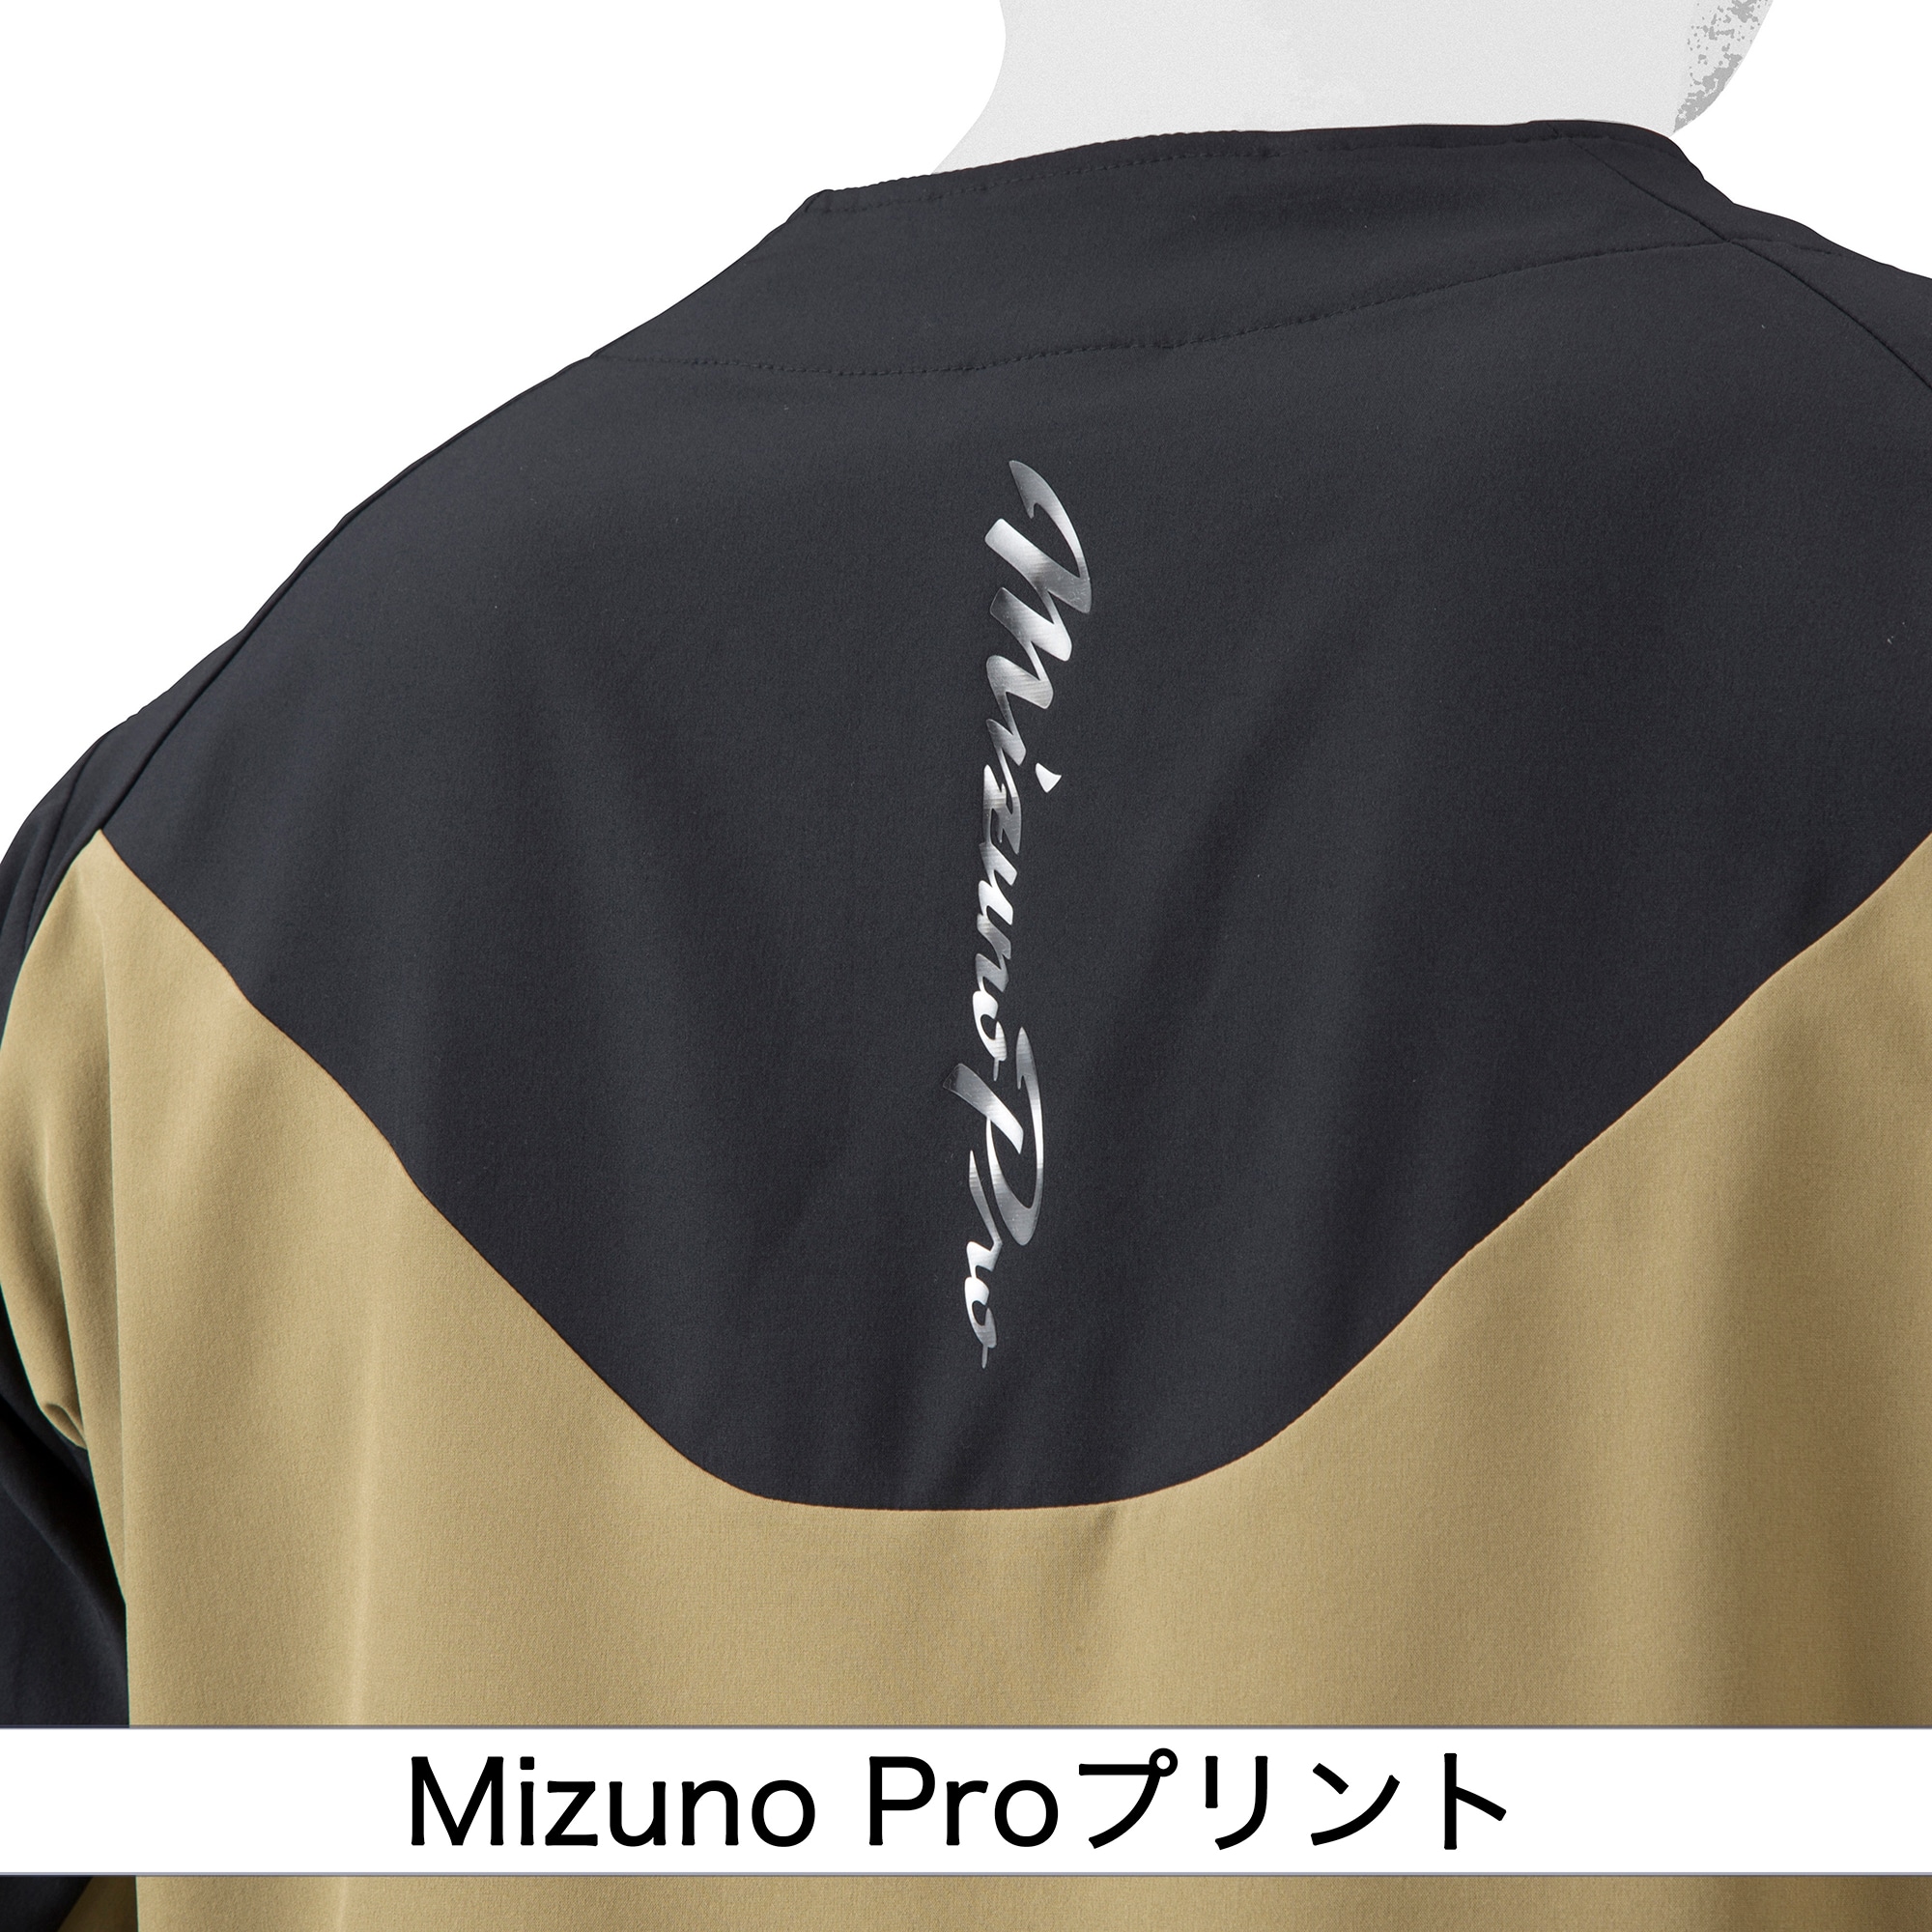 報徳学園 MIZUNO Pro ジャケット SizeXO 日本製種類グランドコート